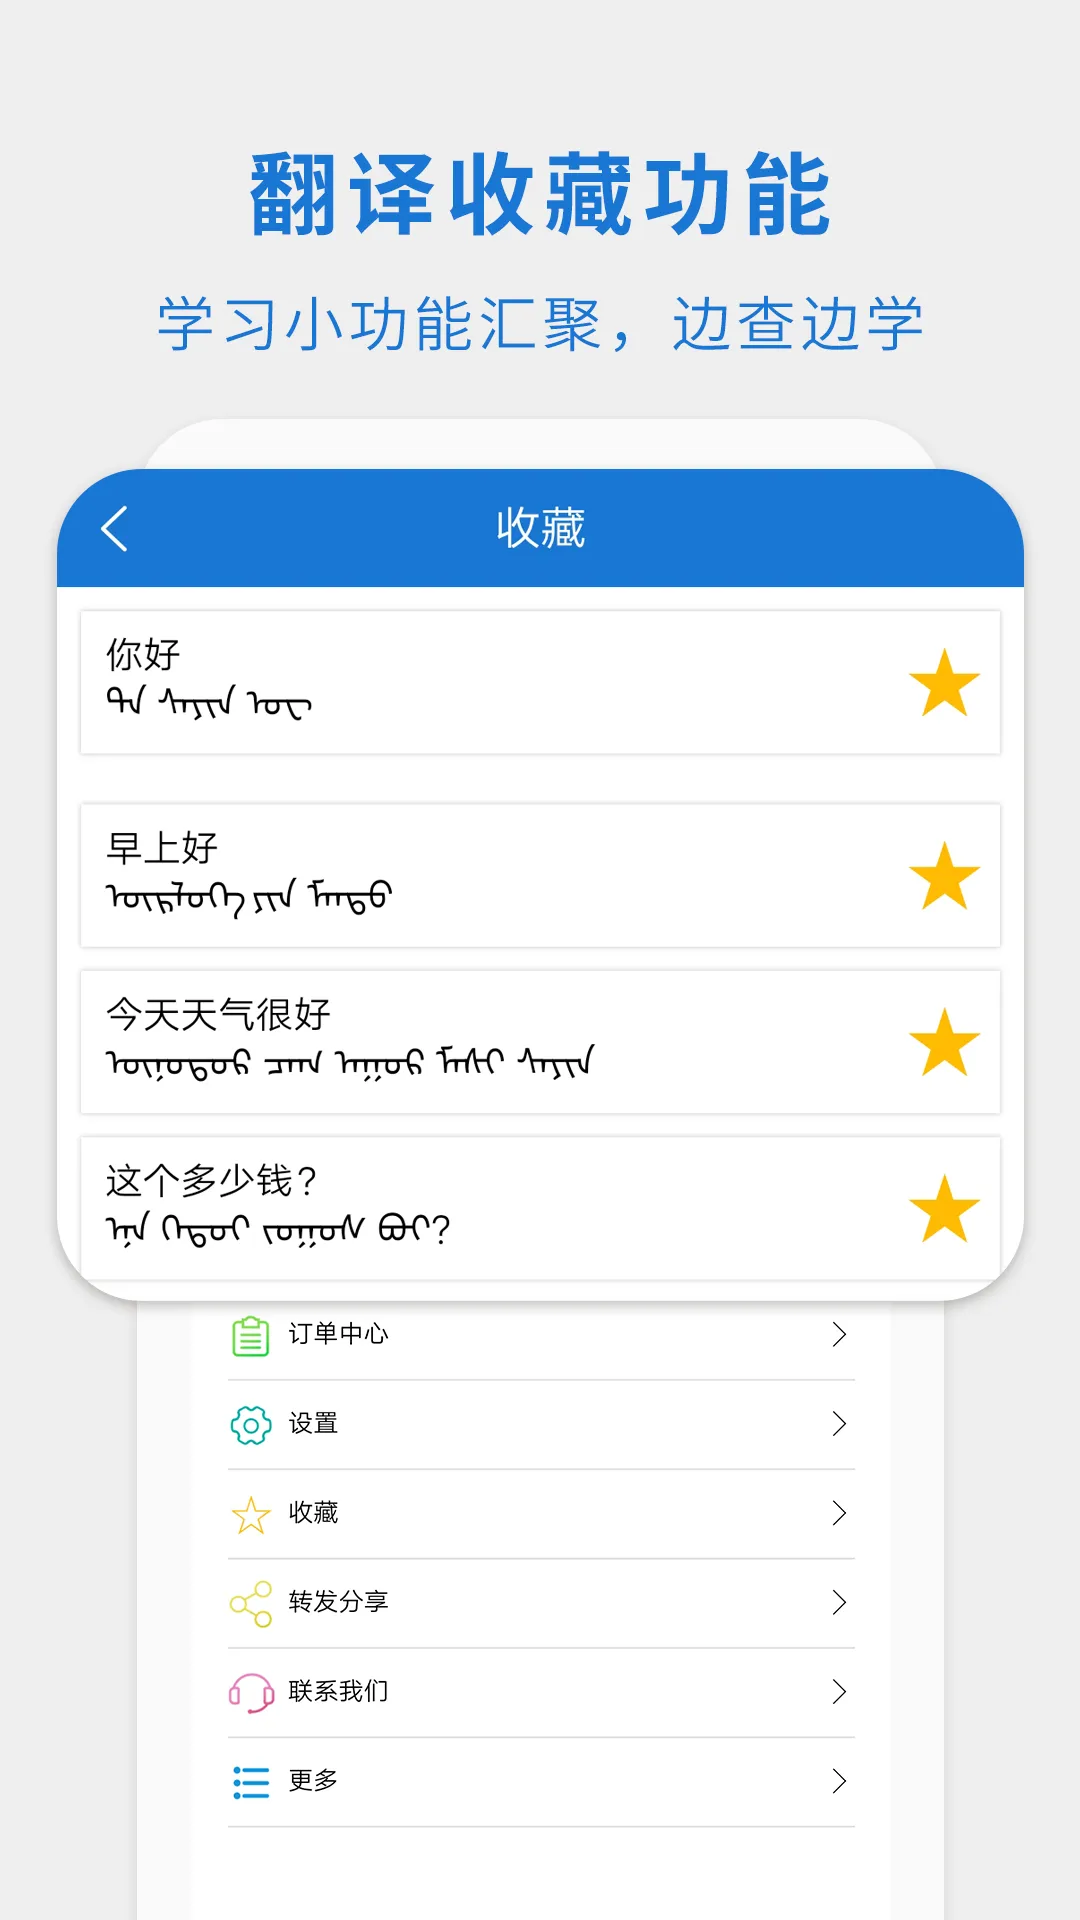 蒙汉翻译通最新版本 v3.3.2 官方安卓版 2